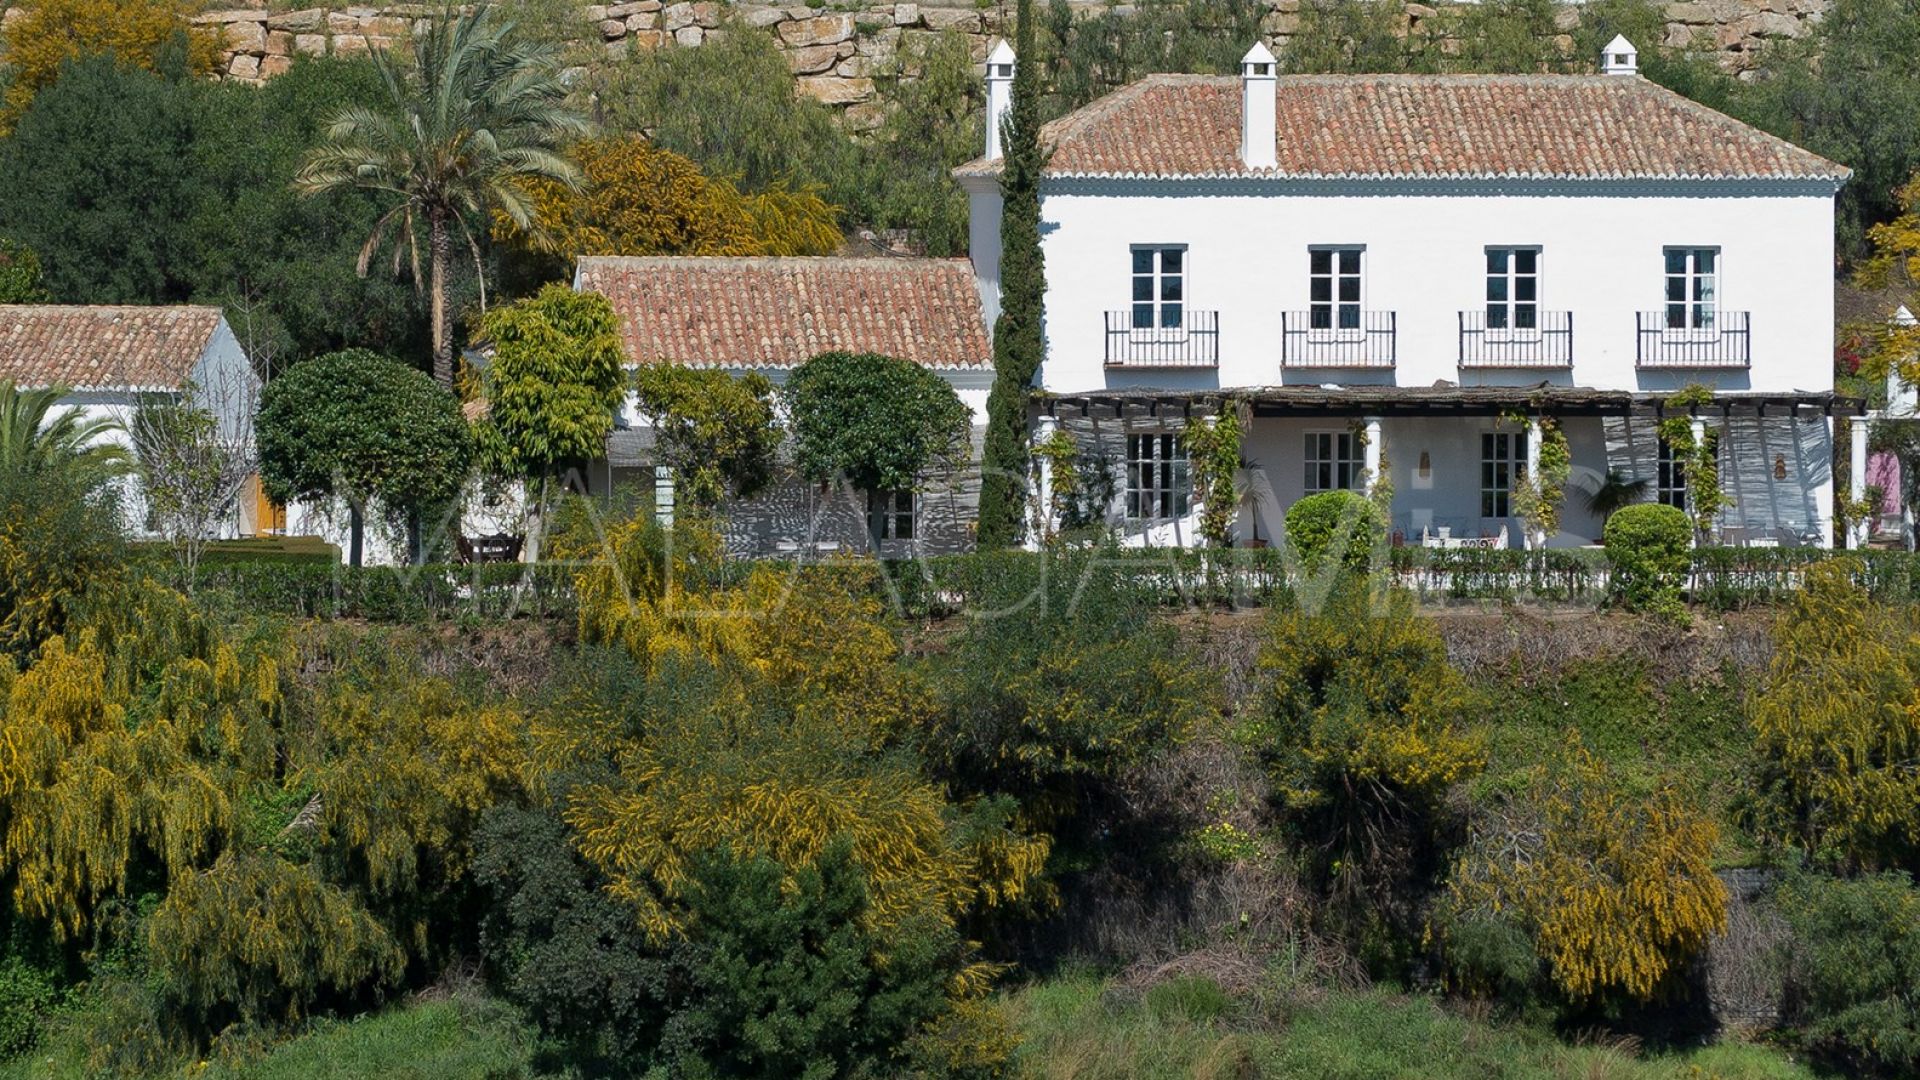 5 bedrooms Puerto del Almendro villa for sale